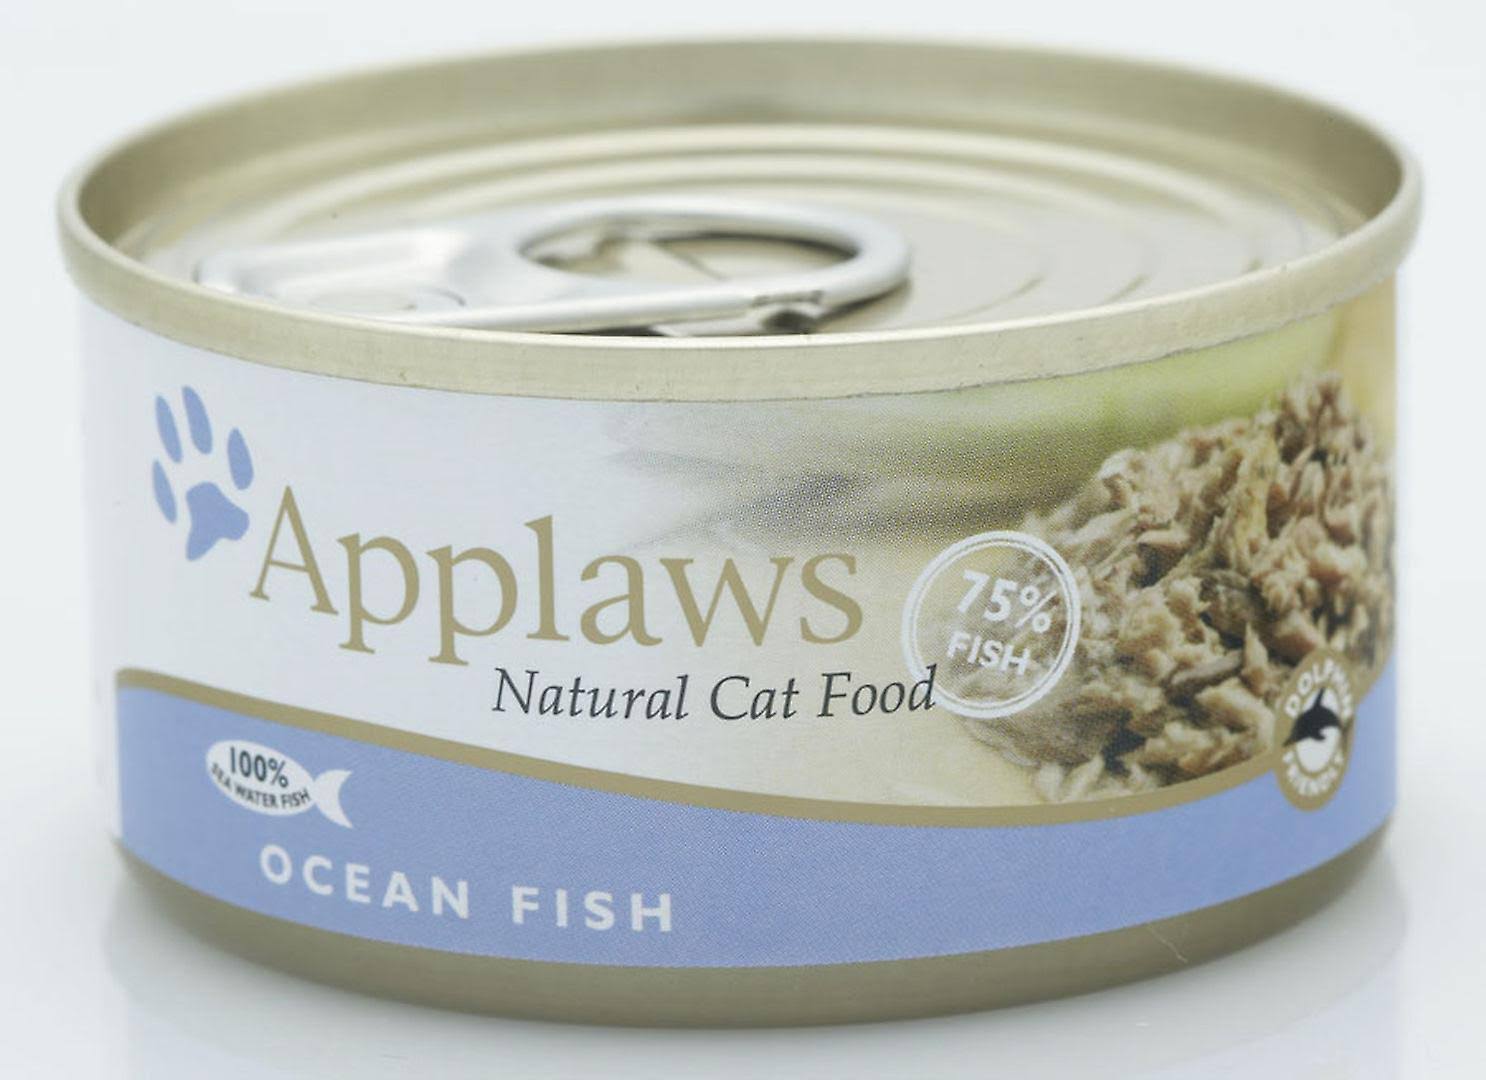 Applaws Natural Cat Food - Ocean Fish